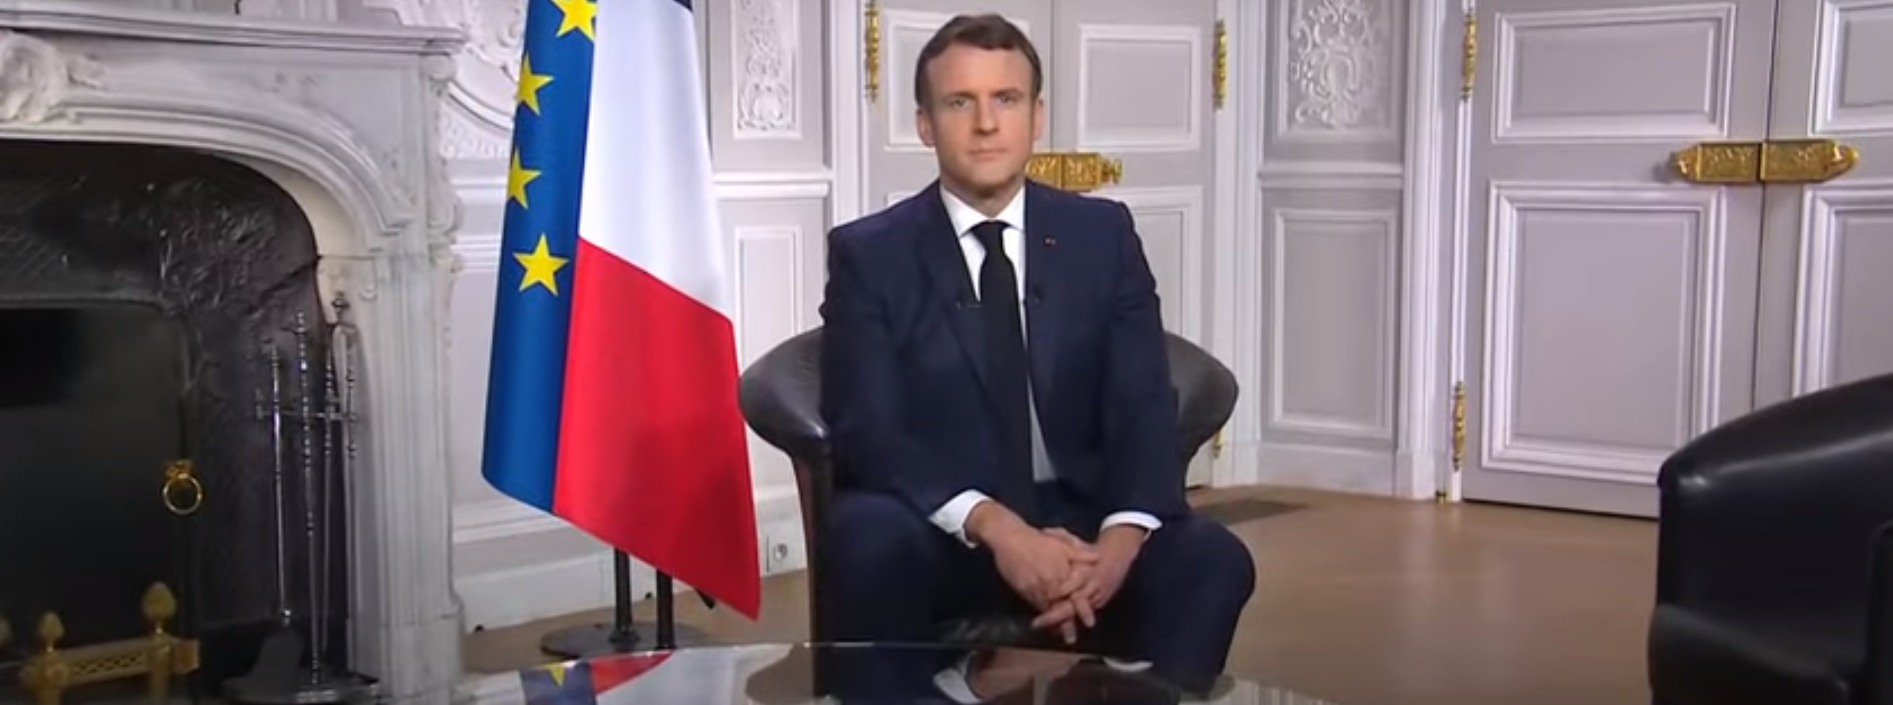     Emmanuel Macron présente ses voeux pour l'année 2021 et remercie les "héros de la nation"

